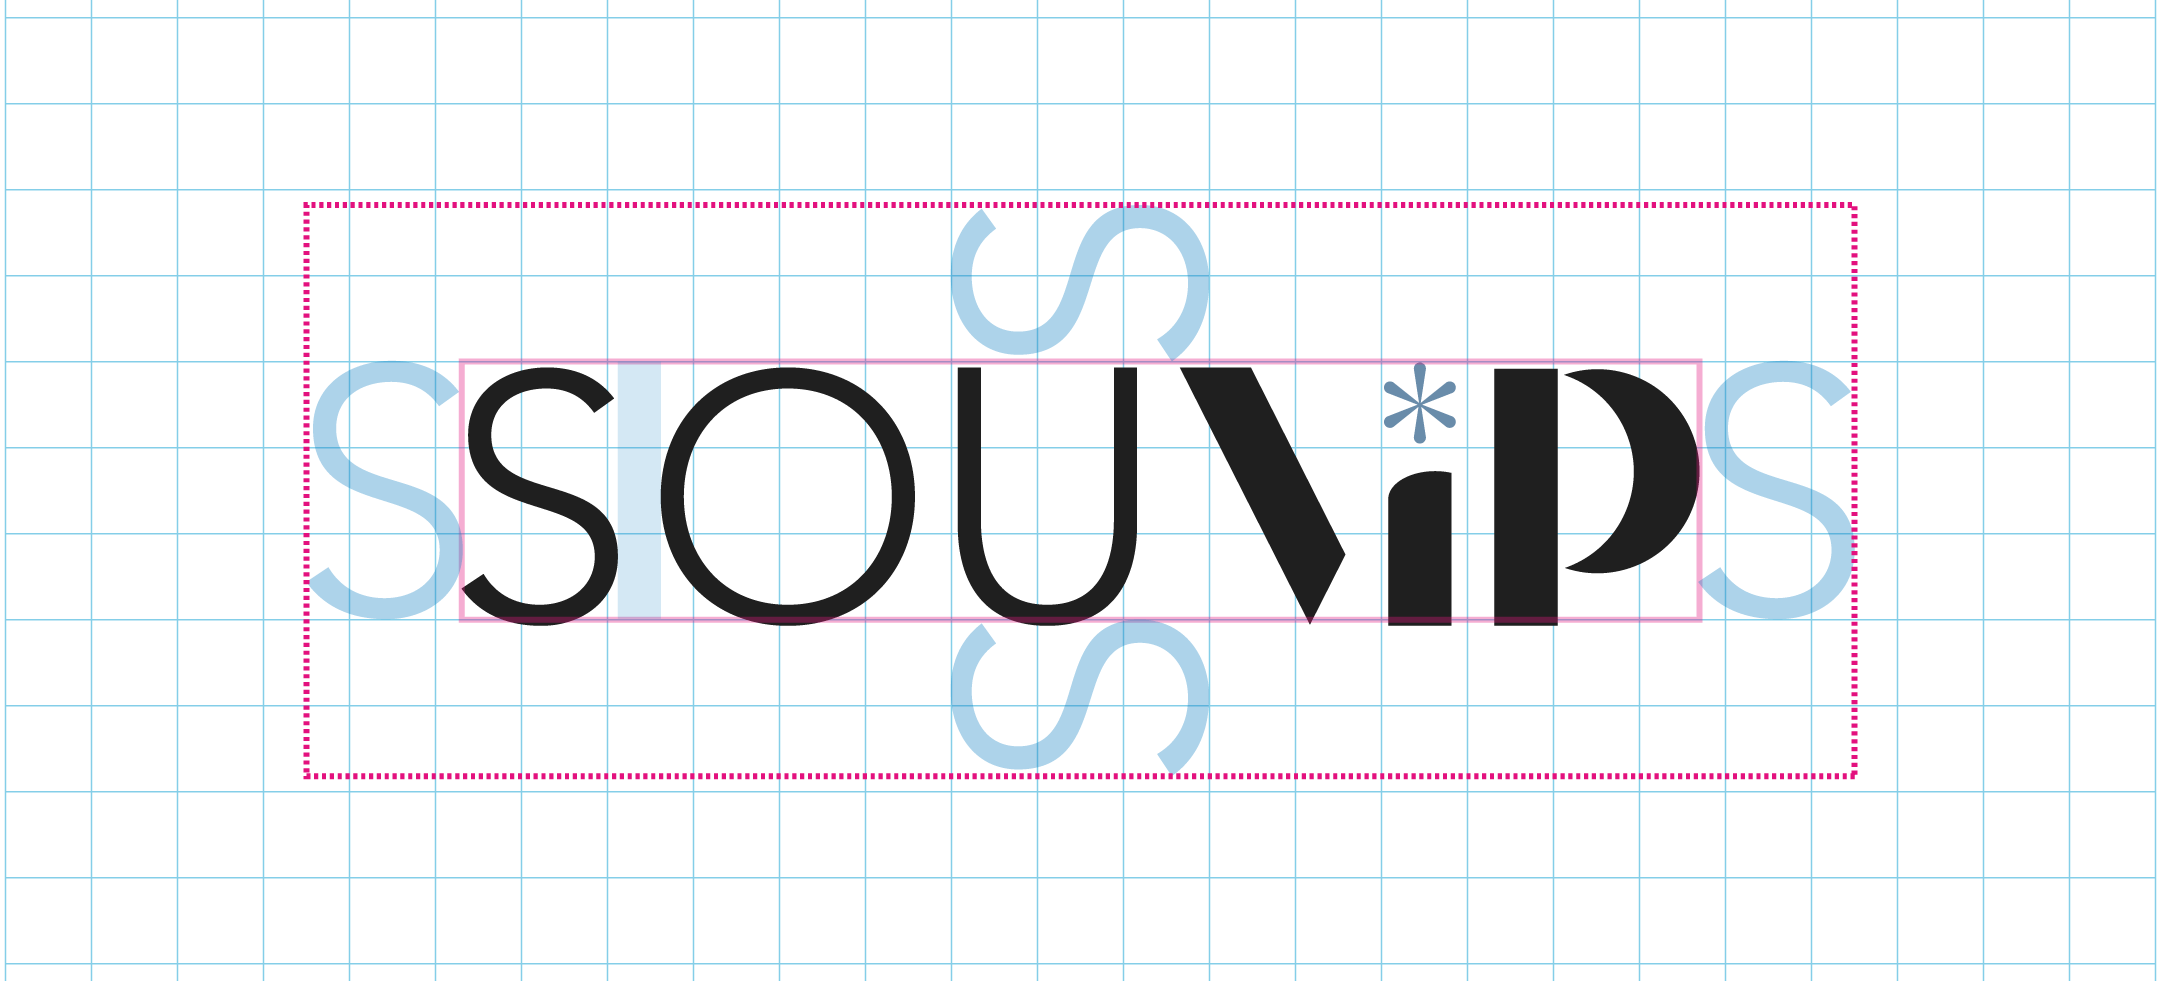 SouVip - Criação de logo e embalagem em Goiânia - Buffo Design